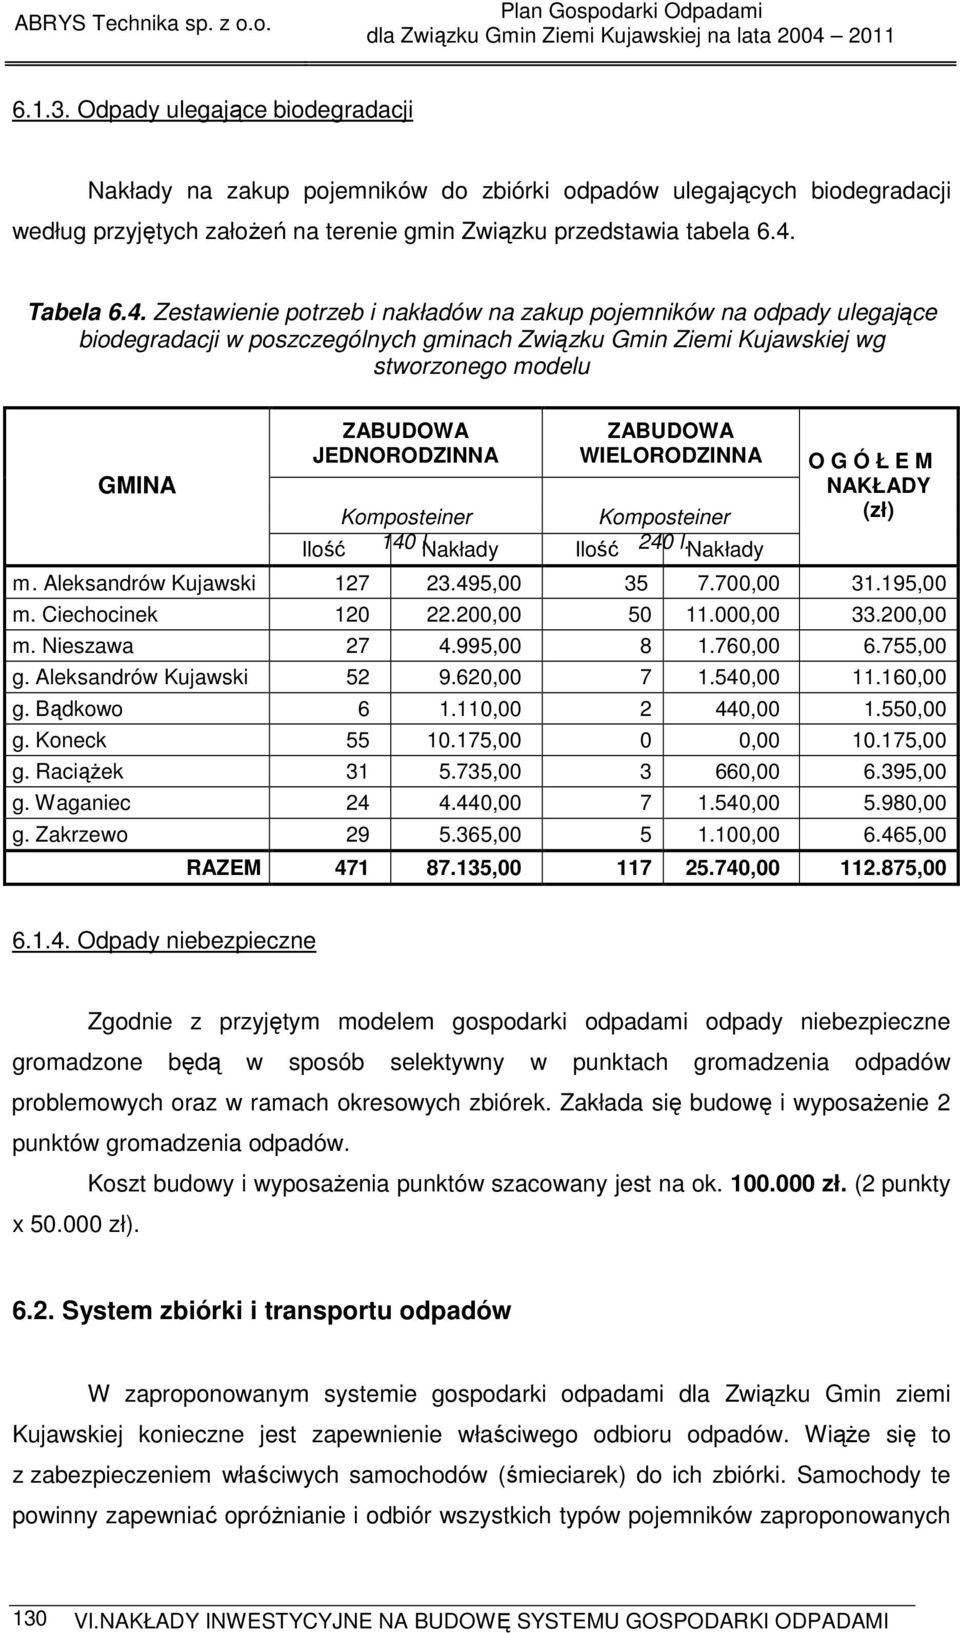 Zestawienie potrzeb i nakładów na zakup pojemników na odpady ulegające biodegradacji w poszczególnych gminach Związku Gmin Ziemi Kujawskiej wg stworzonego modelu GMINA ZABUDOWA JEDNORODZINNA ZABUDOWA